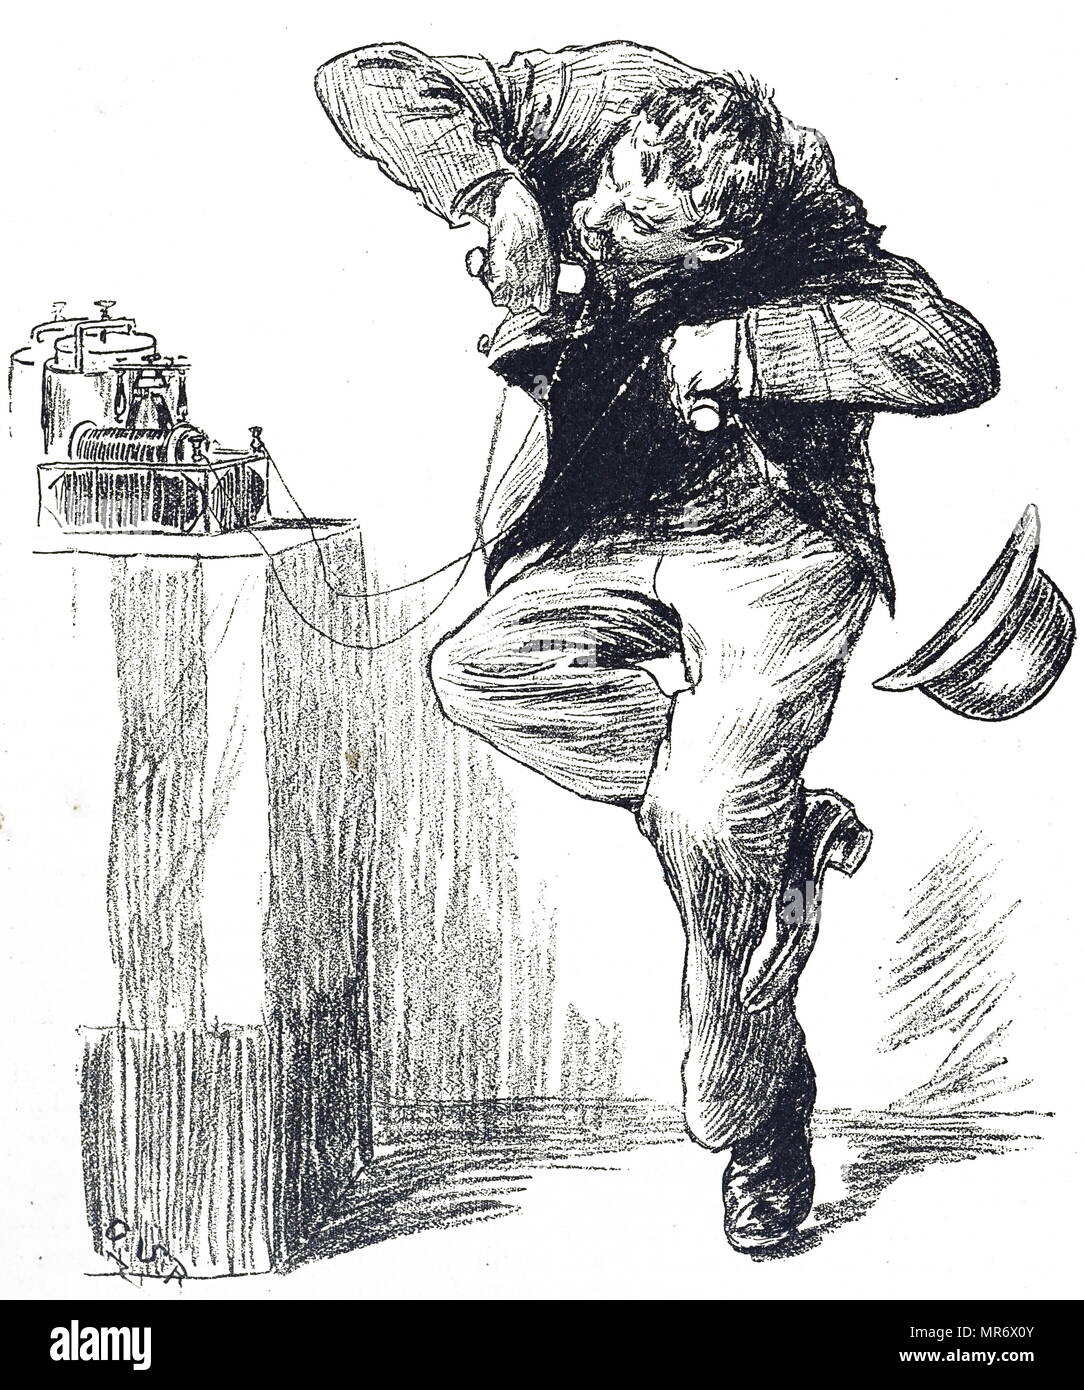 Gravur, ein Mensch, der hatte eine Umdrehung auf der galvanischen Batterie, die Schock Würde der Person, die Sie halten. Vom 19. Jahrhundert Stockfoto